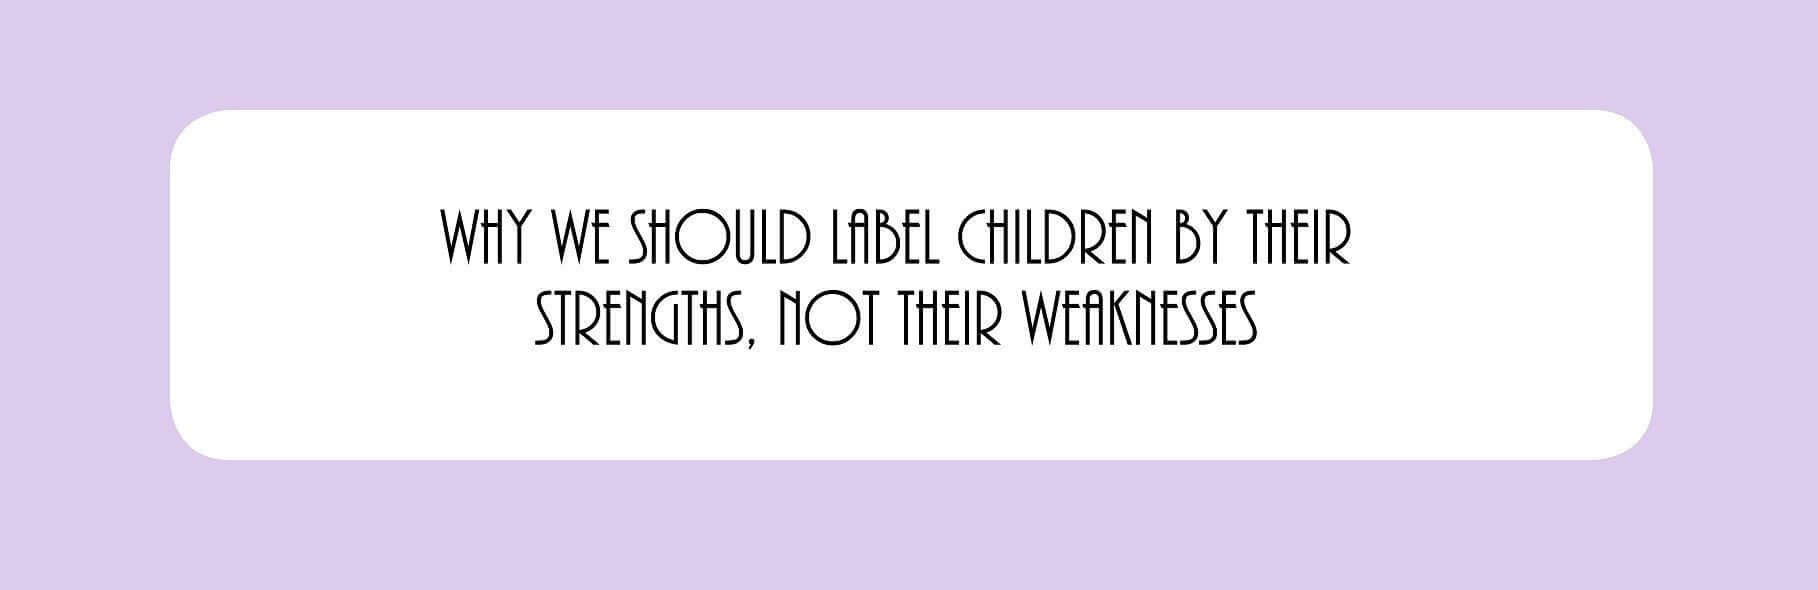 Por qué debemos etiquetar a los niños por sus fortalezas, no por sus debilidades